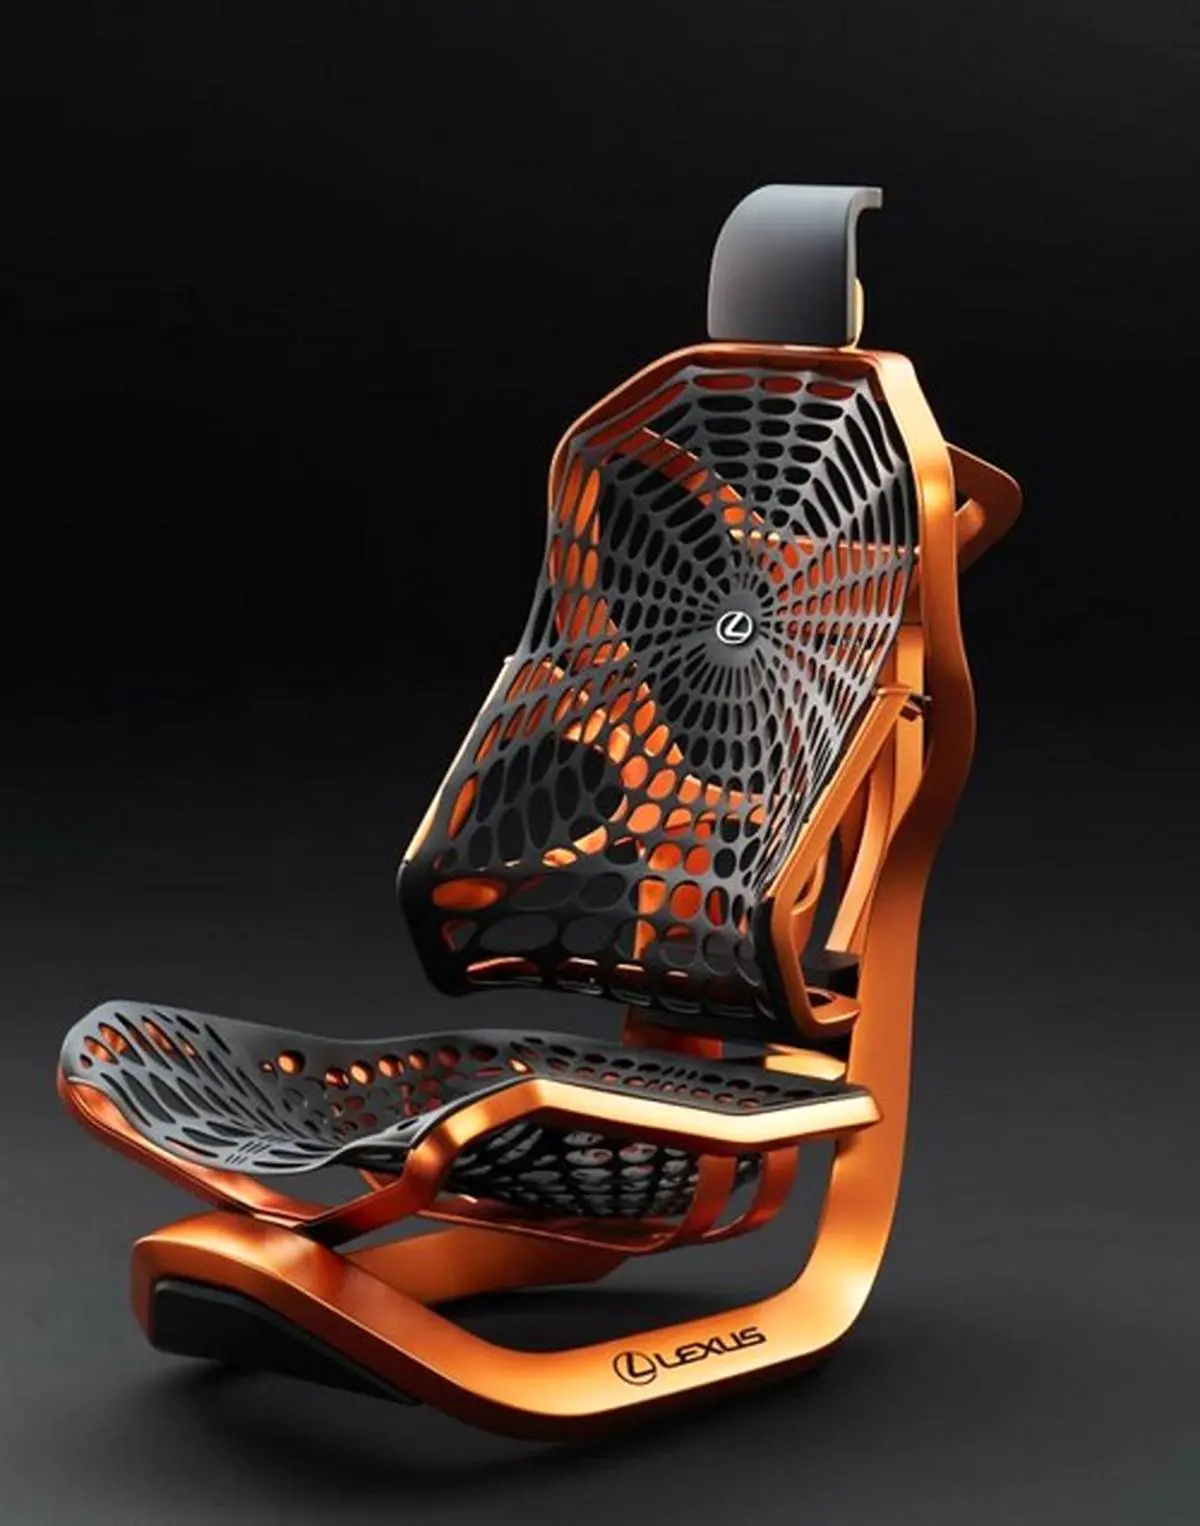 مدرن ترین صندلی خودرو که با الیاف تار عنکبوت ساخته شده